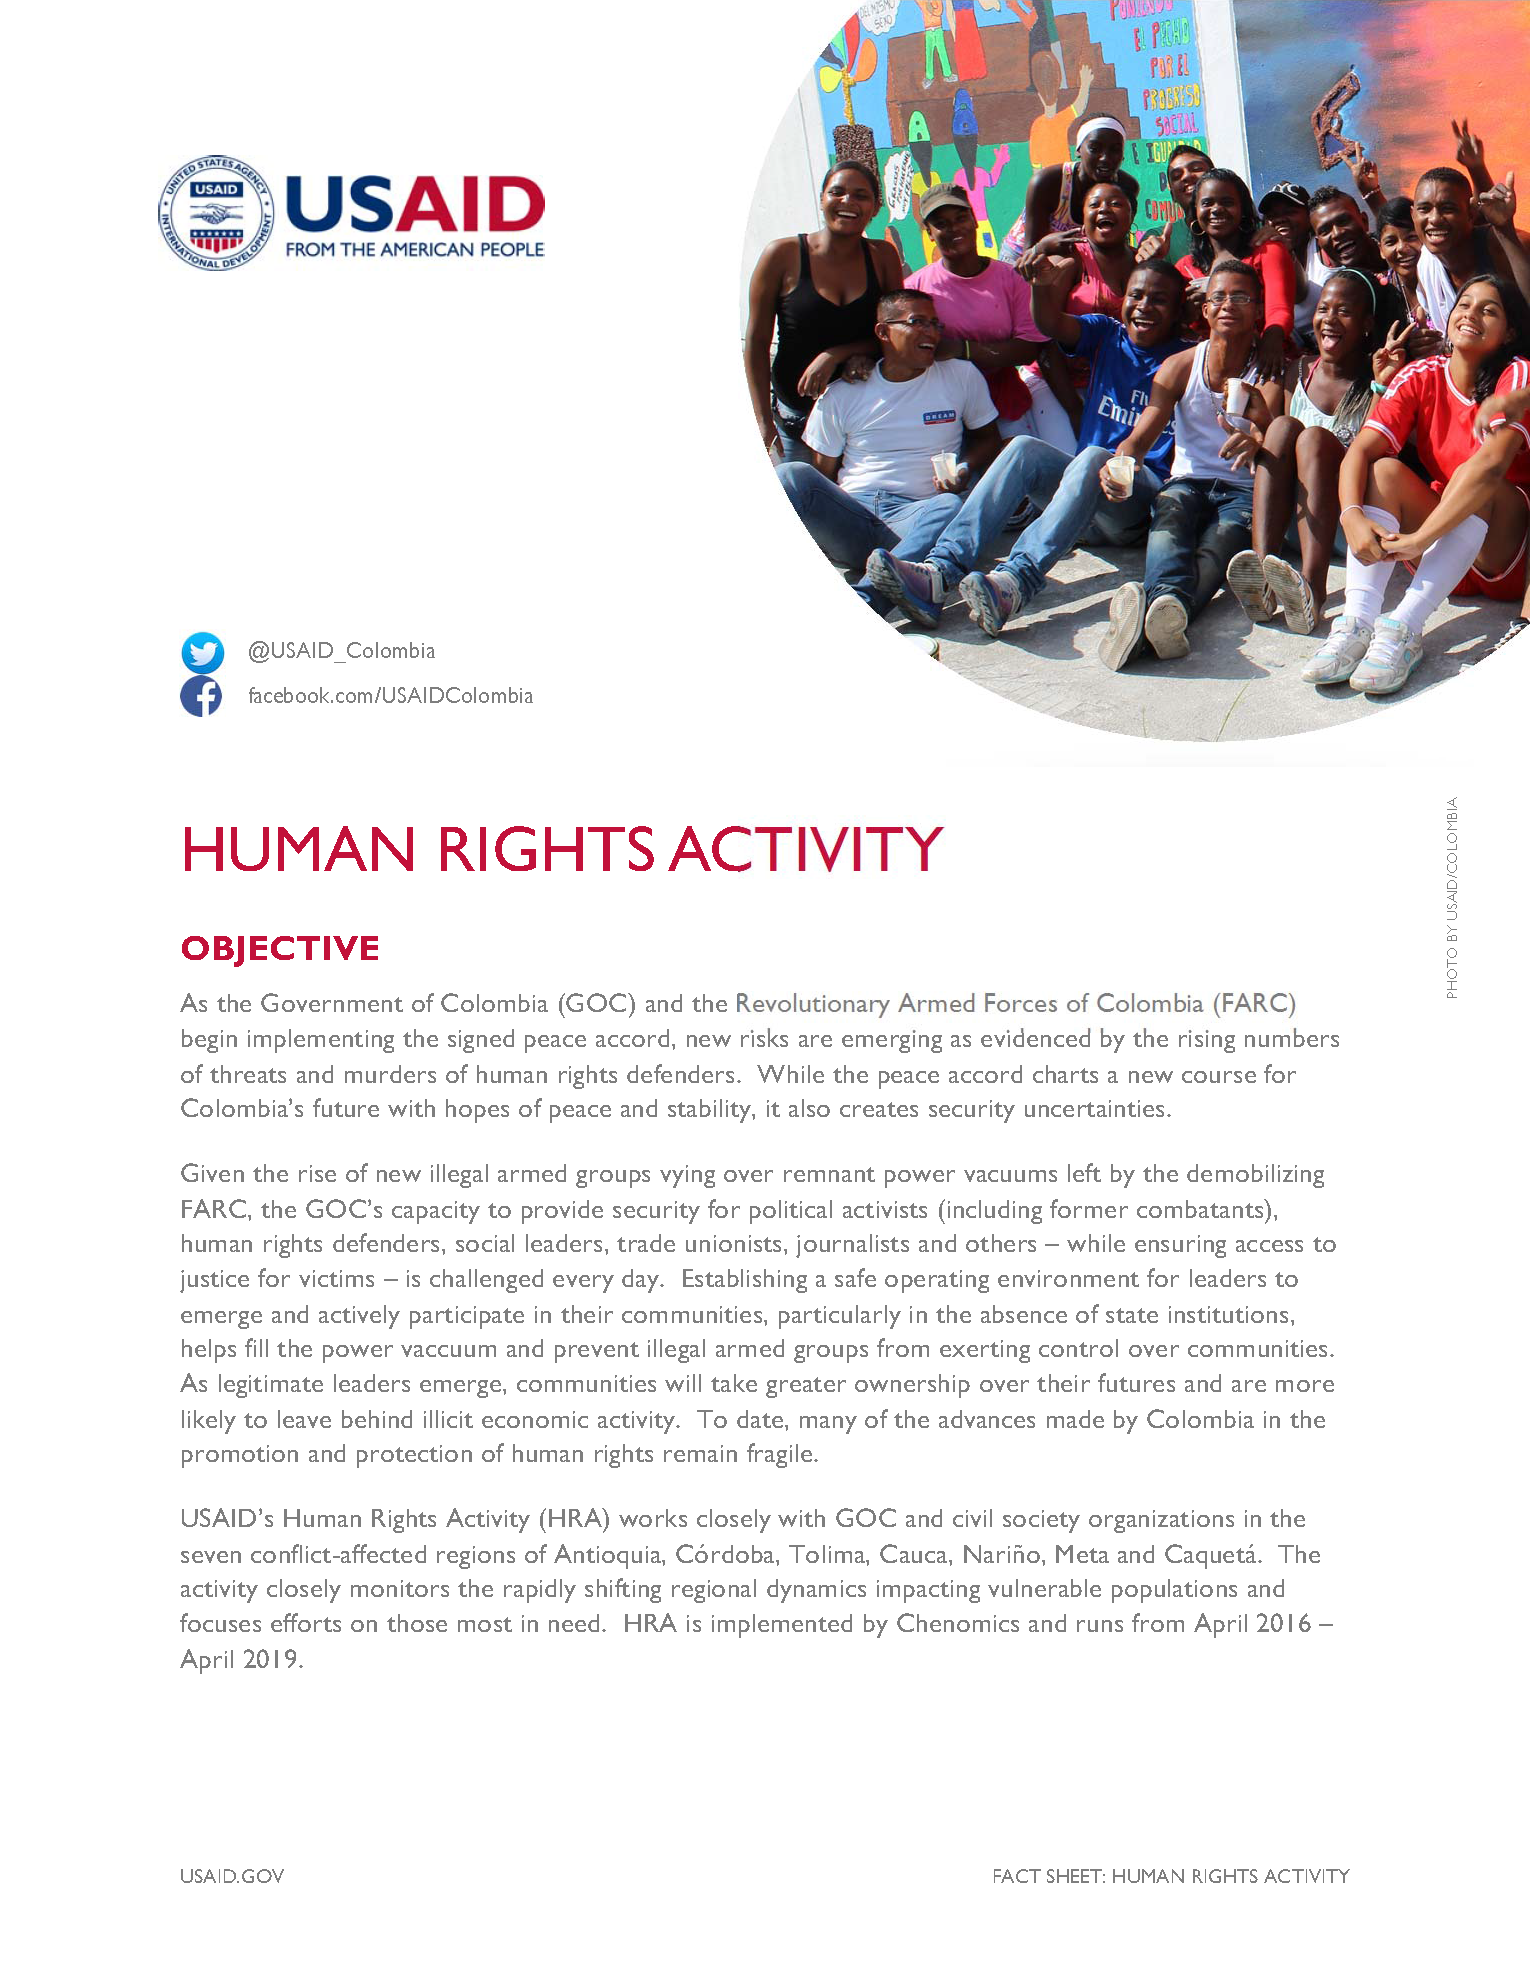 Human Rights Activity (HRA) Fact Sheet